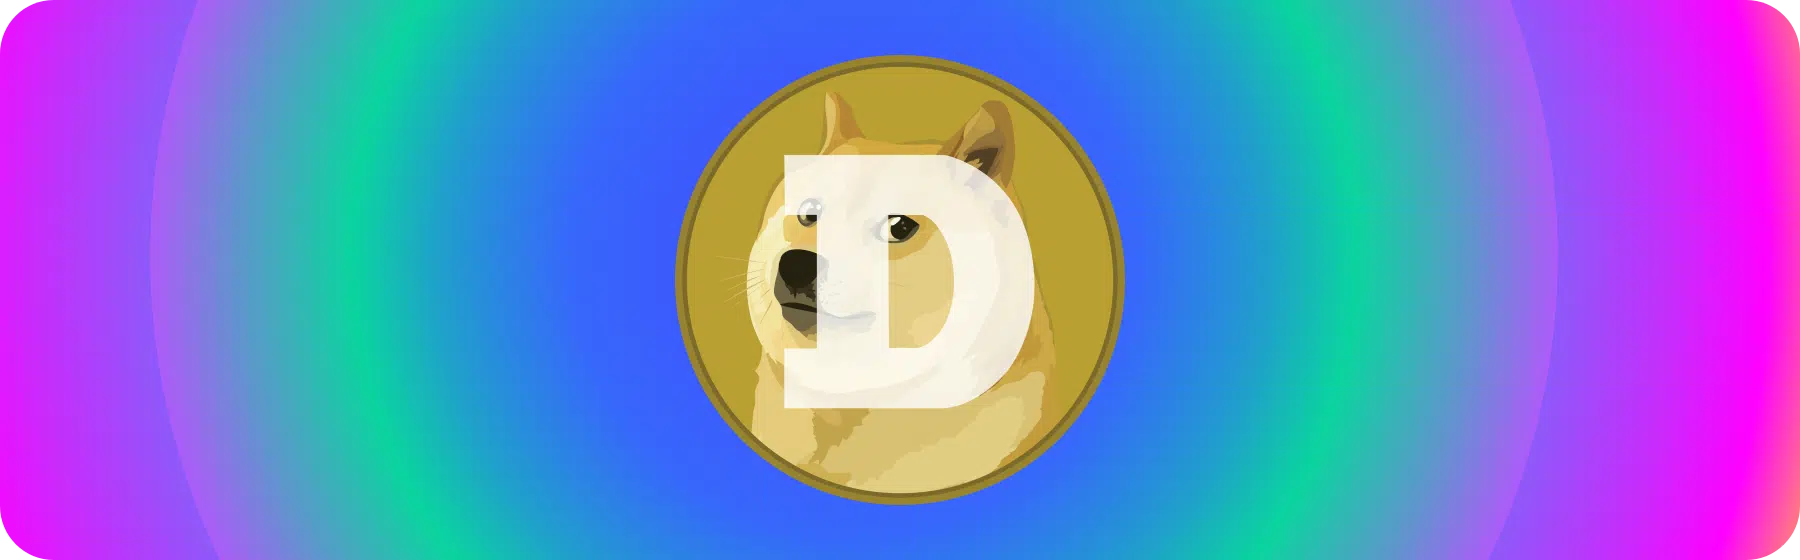 logo for dogecoin